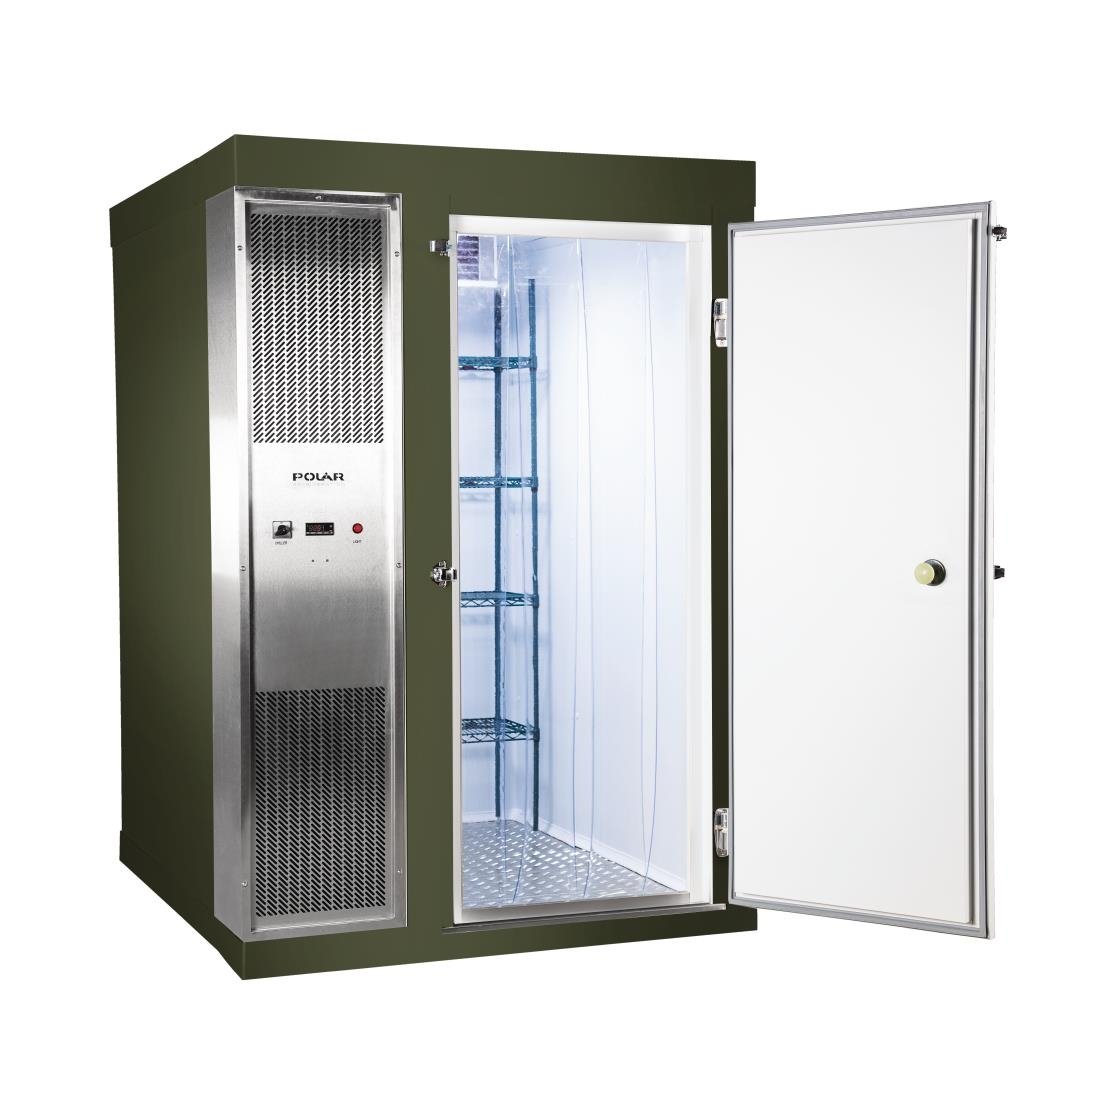 DS487-FGN Polar U-Series 2.1 x 1.5m Integral Walk In Freezer Room Green JD Catering Equipment Solutions Ltd